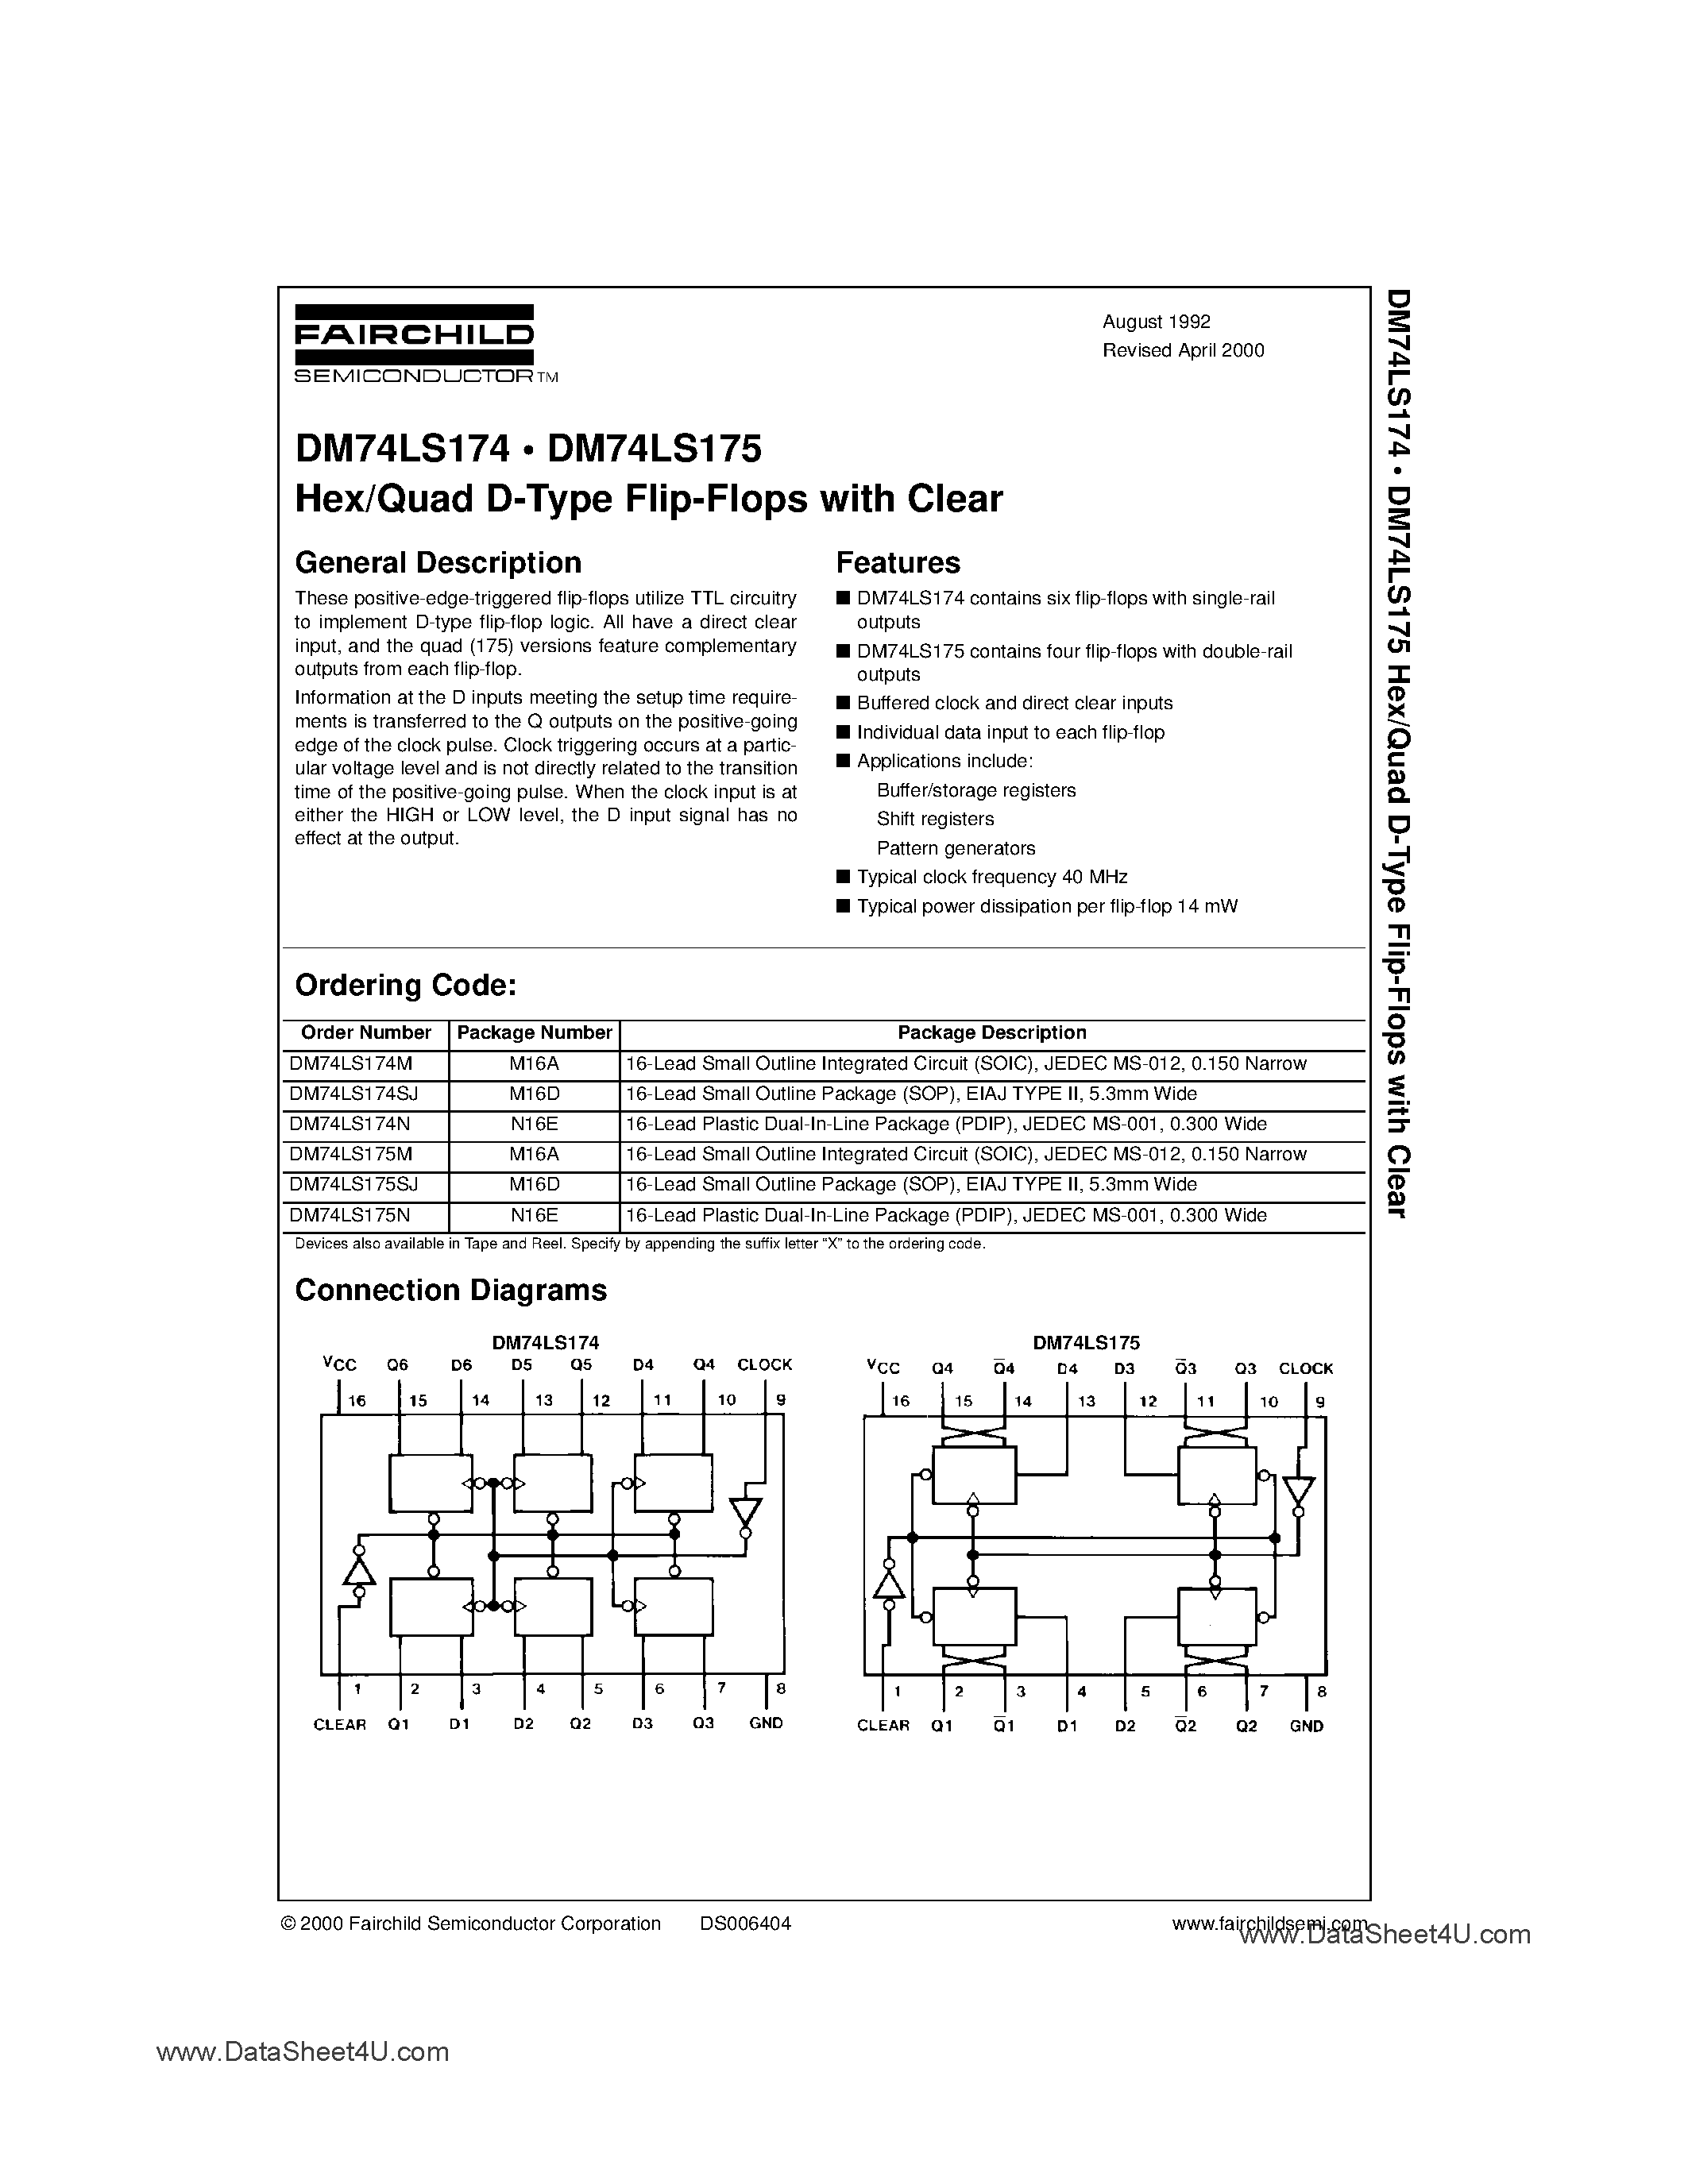 Datasheet DM74LS174 - (DM74LS174 / DM74LS175) Hex/Quad D-Type Flip-Flops with Clear page 1